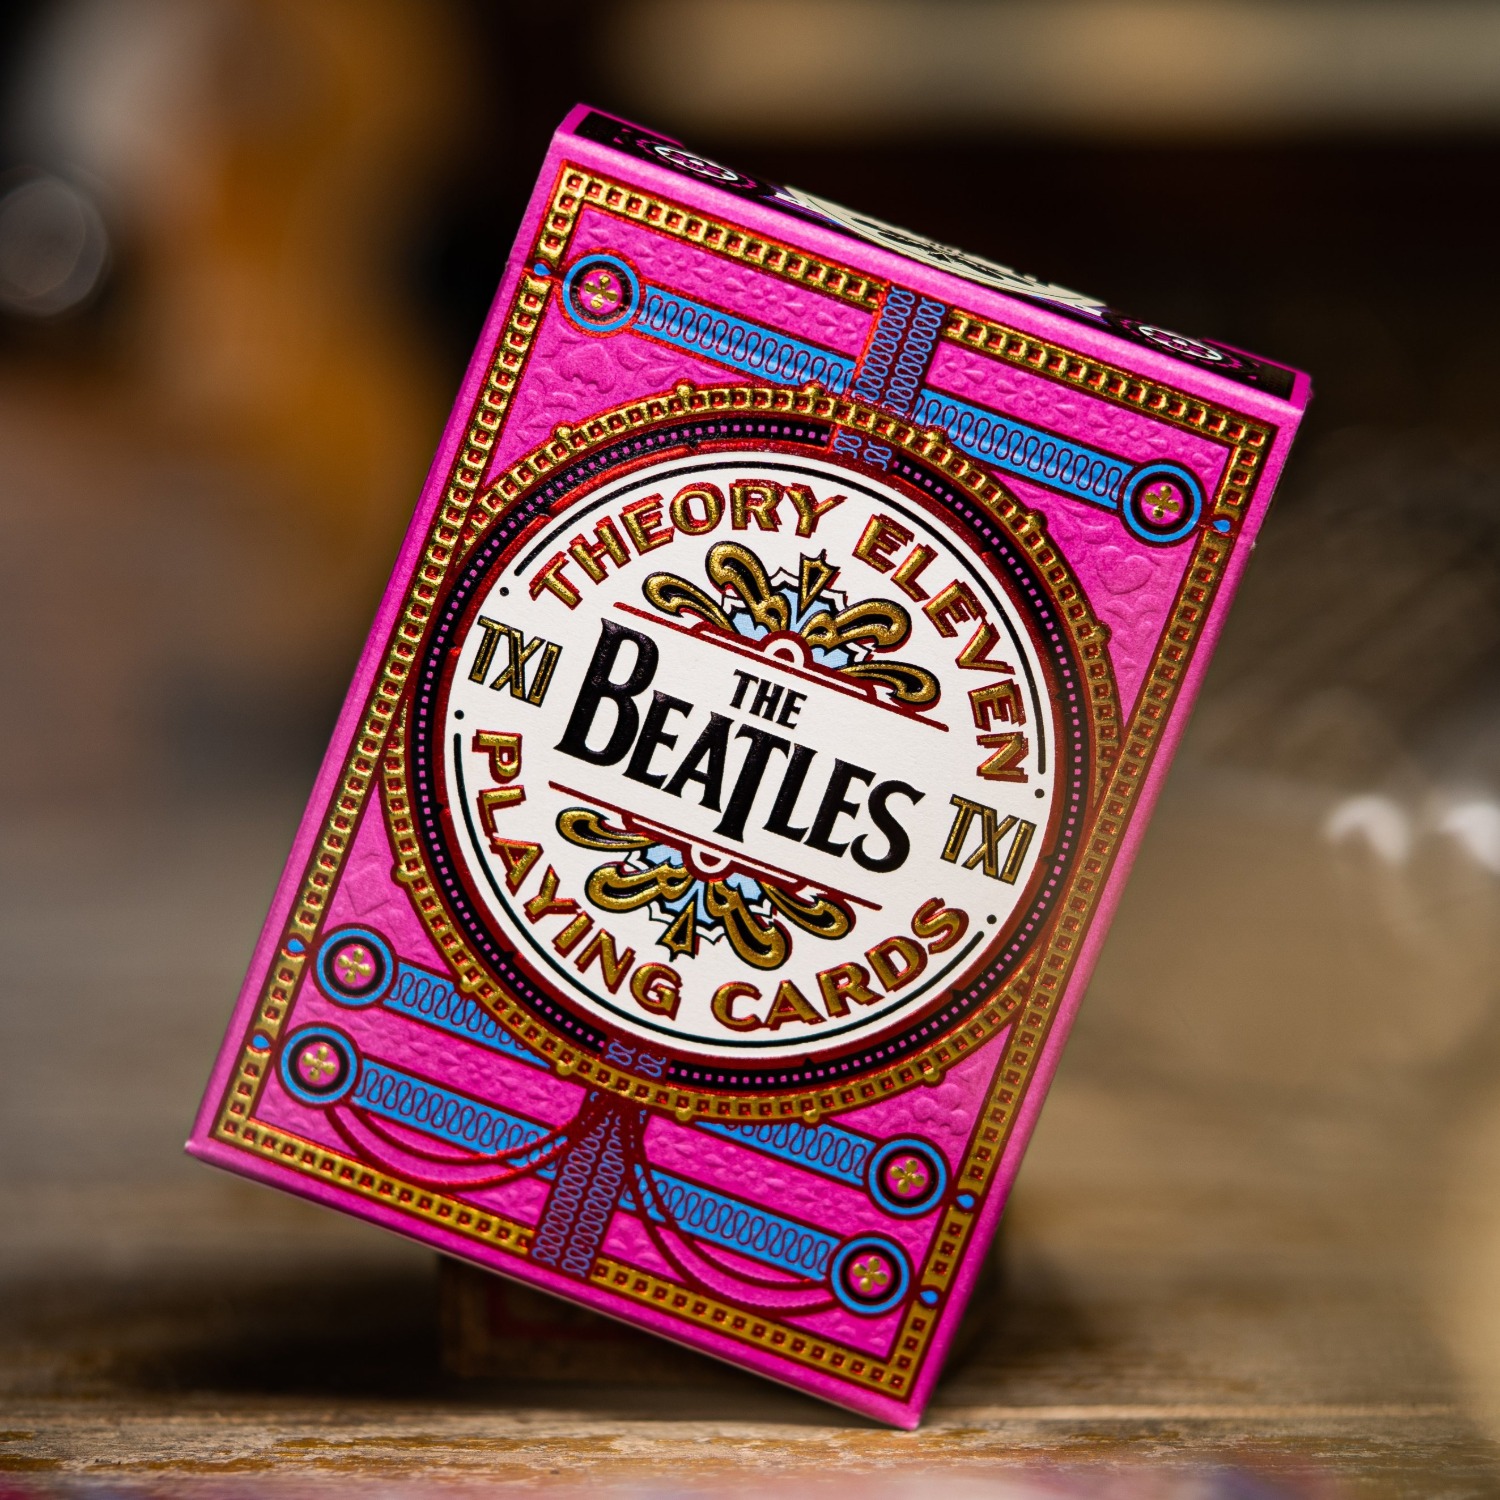 [더비틀즈/핑크]The Beatles (Pink) Playing Cards by theory11(partyn)